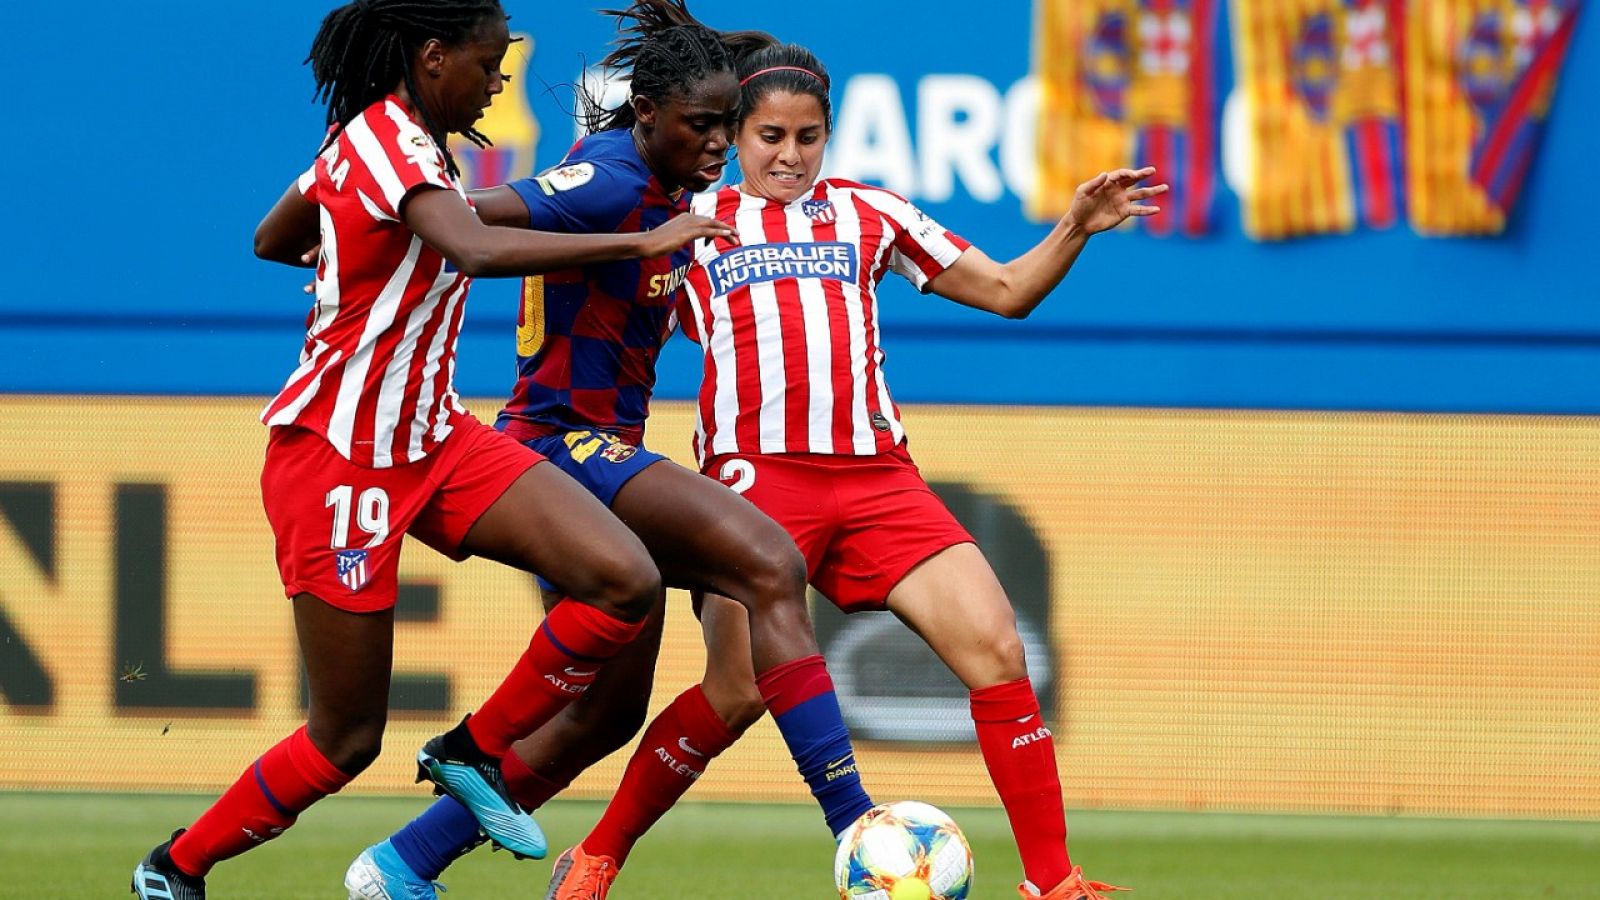 Imagen del partido entre el Atlético de Madrid y el FC Barcelona de la Liga Iberdrola femenina.